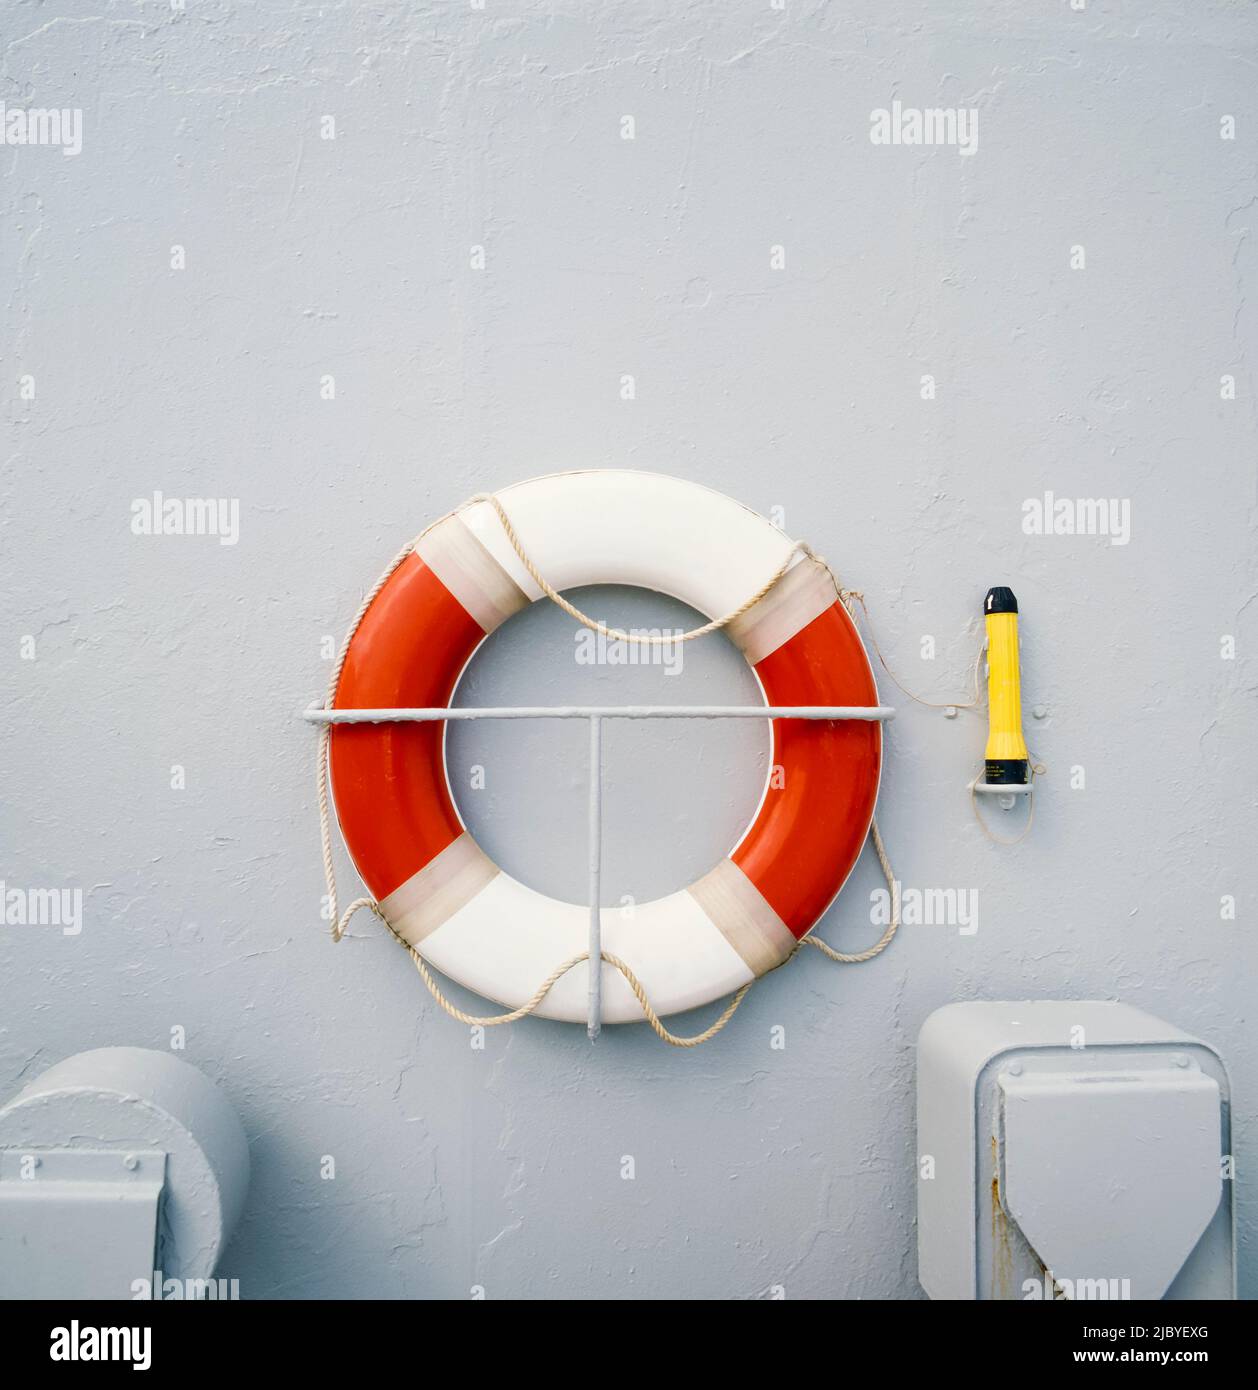 Primo piano dell'anello salvagente rosso e bianco appeso sul lato della nave Foto Stock